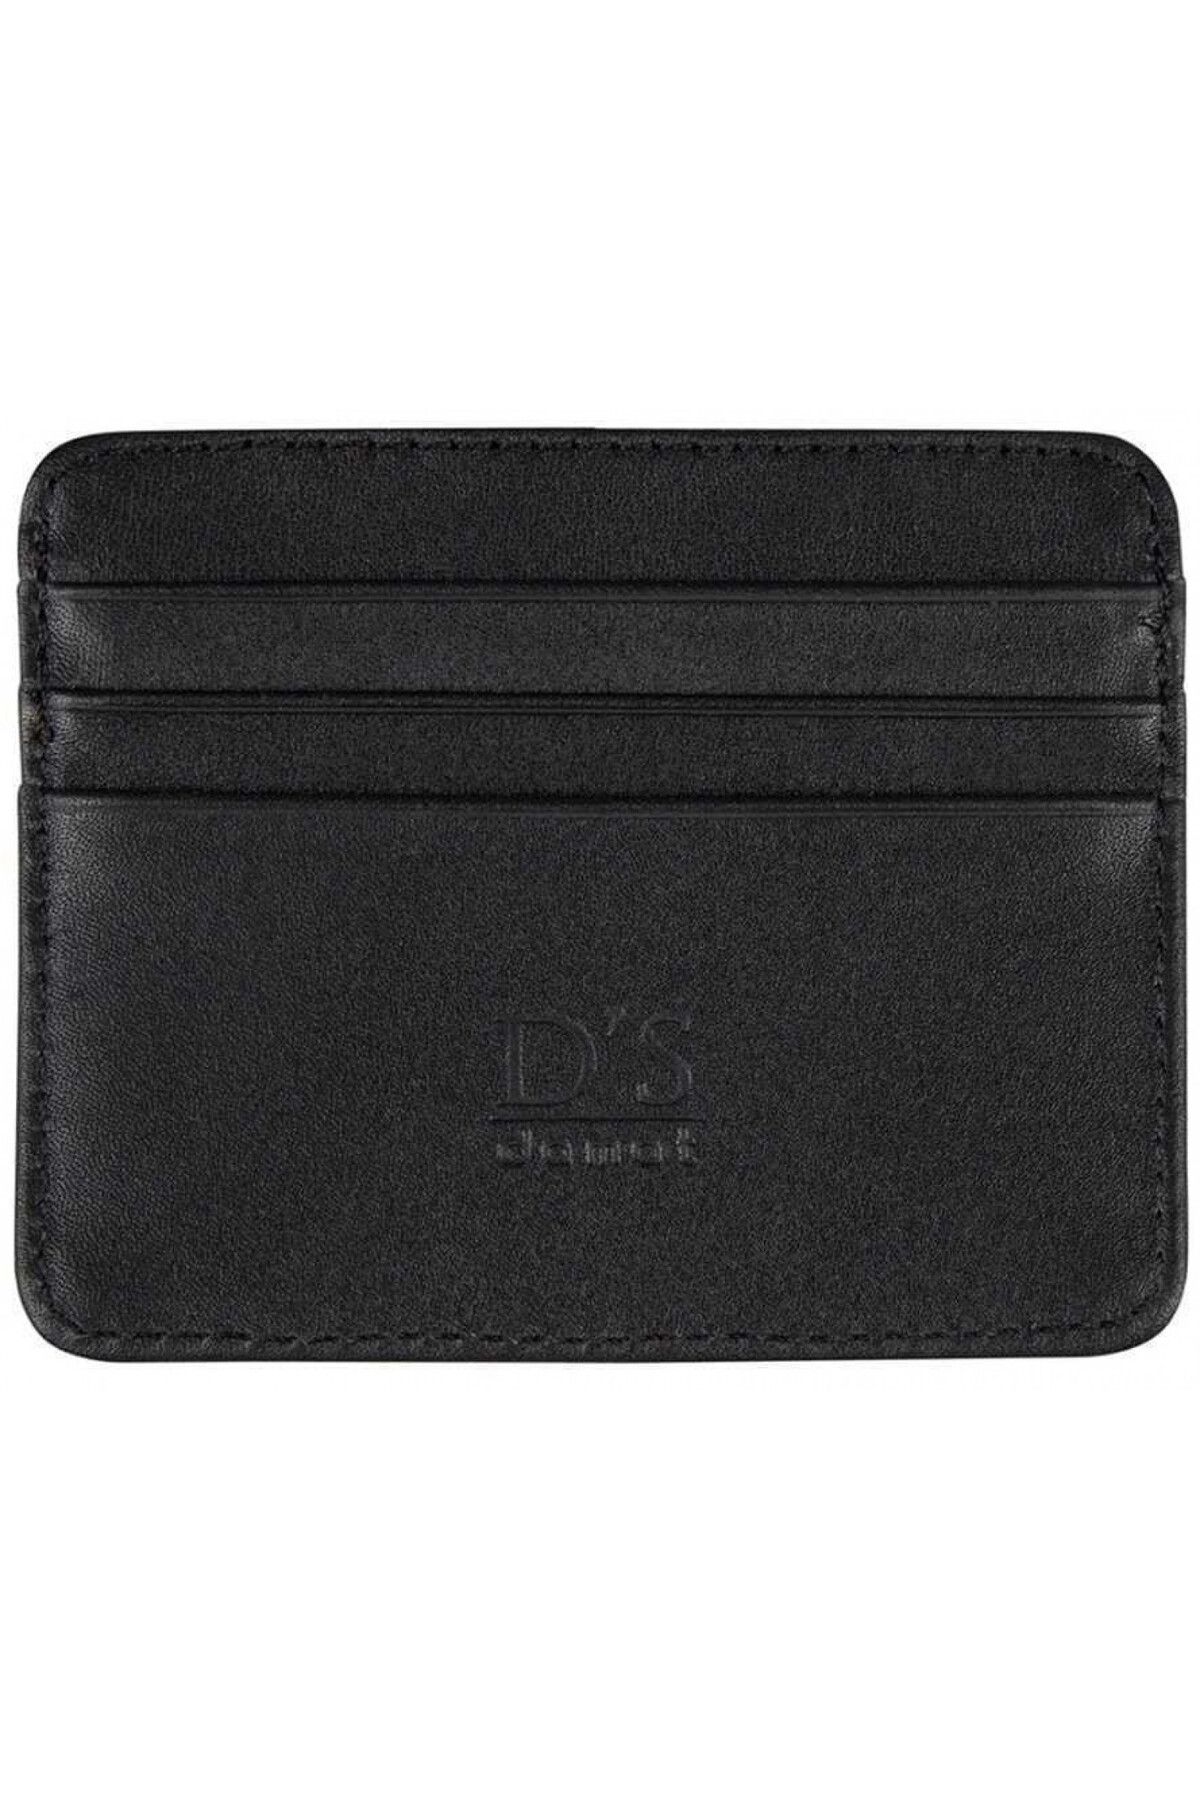 D'S Damat نگهدارنده کارت کیف پول چرمی کمر سیاه